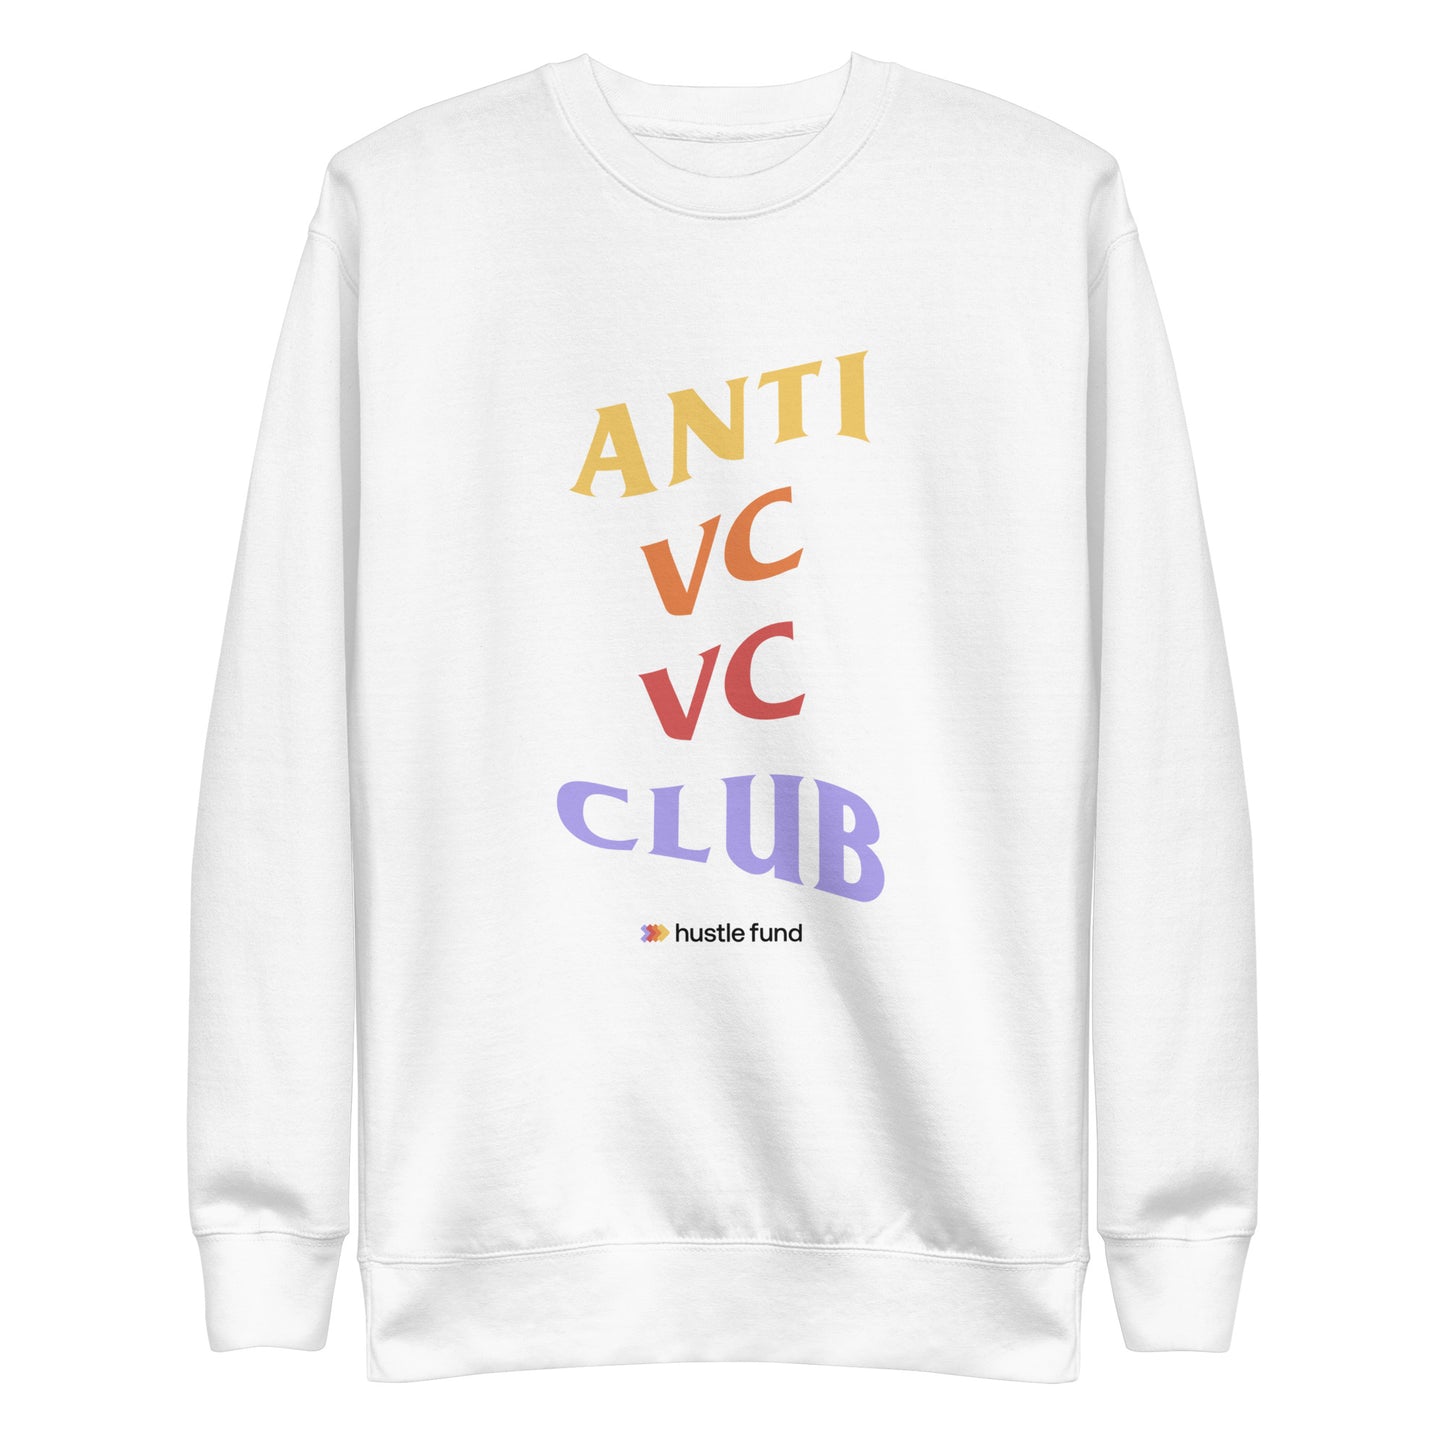 Anti VC VC Club Sweatshirt